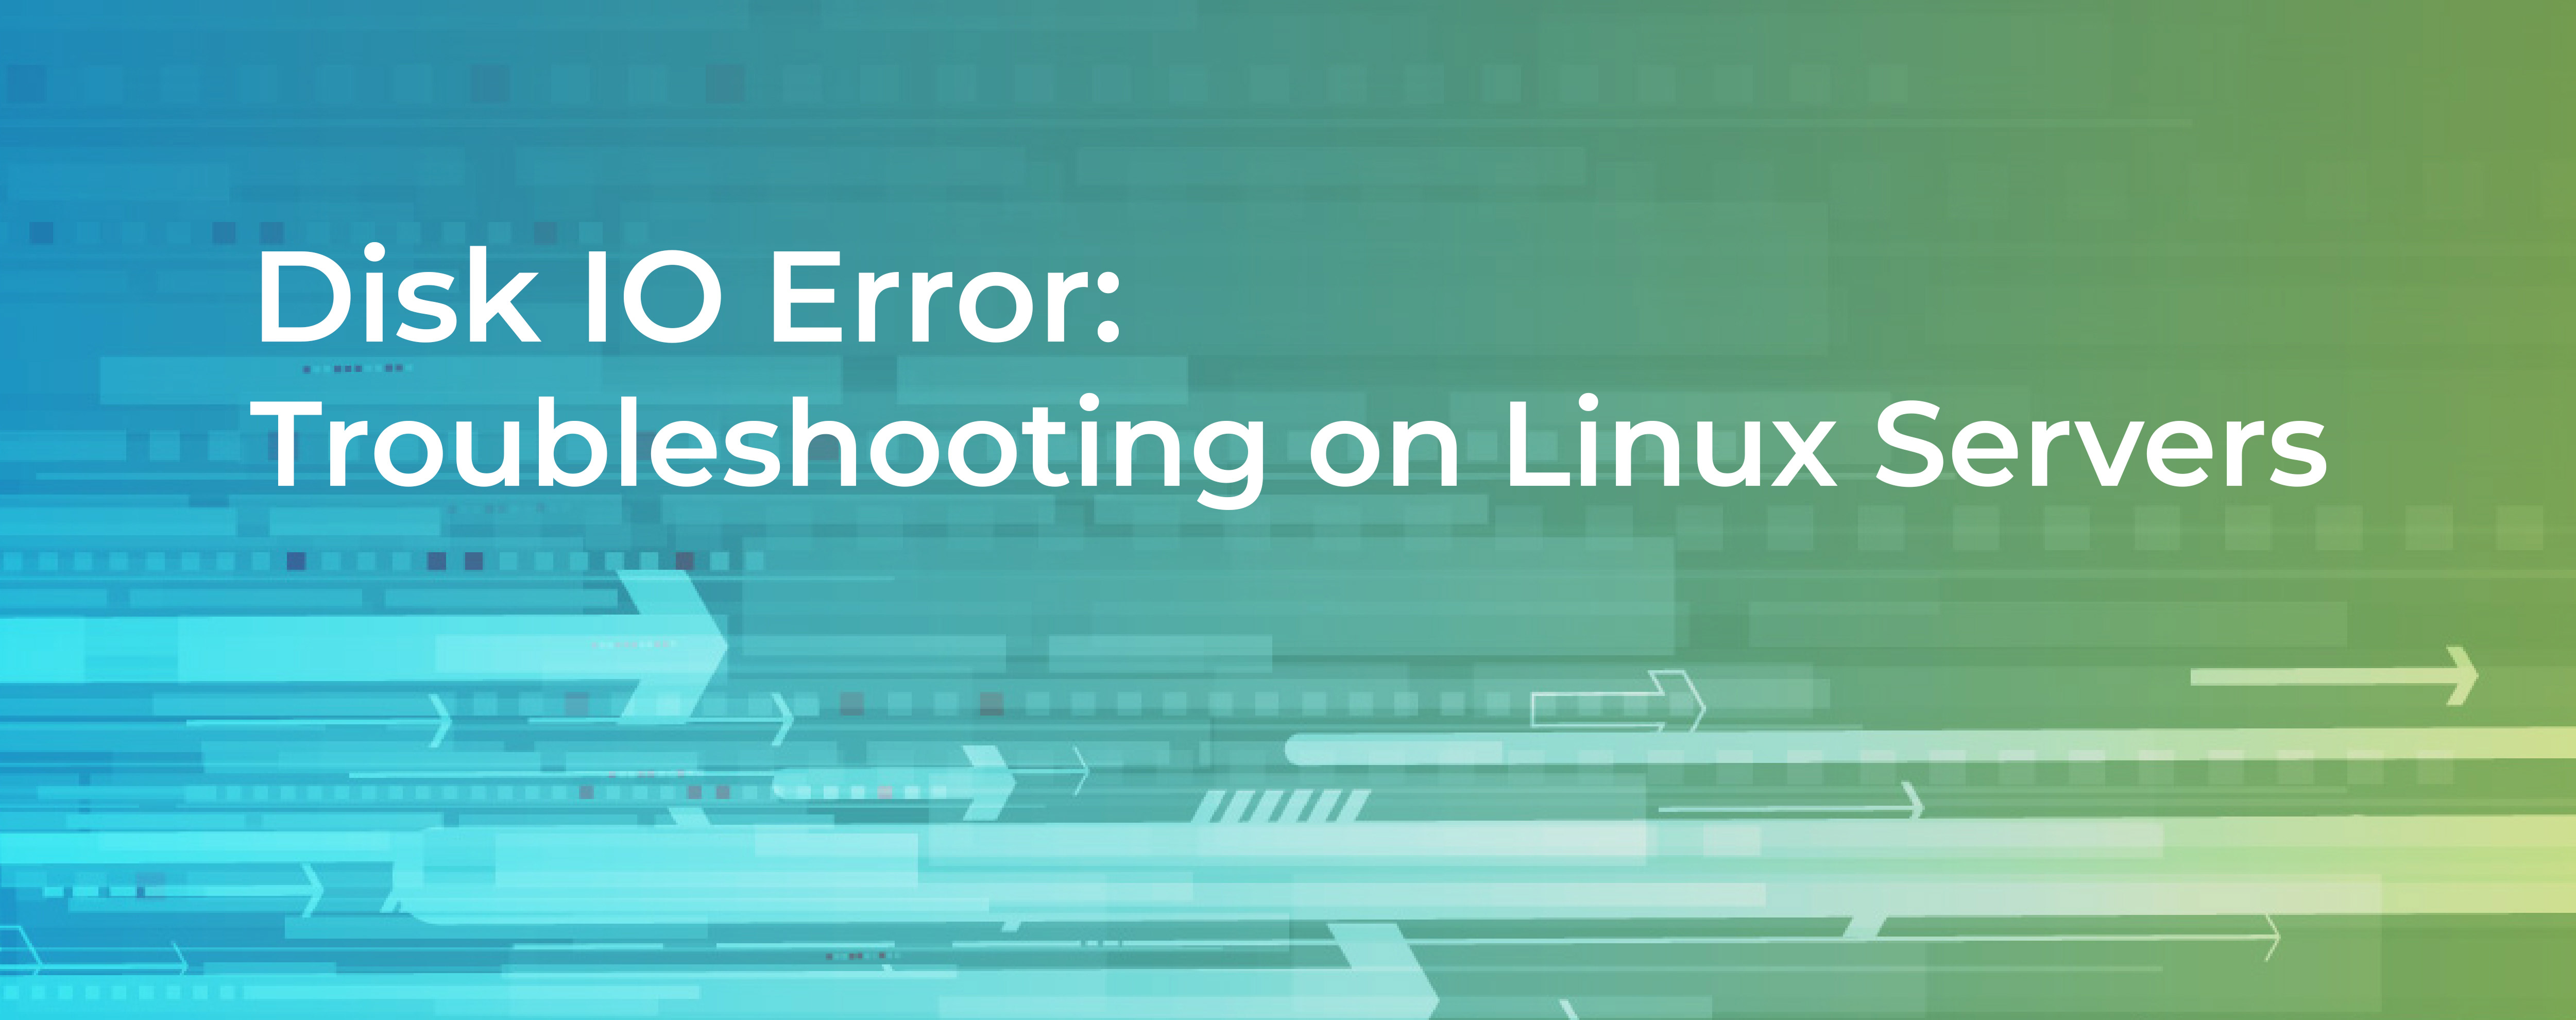 устранение неполадок медленного сервера linux